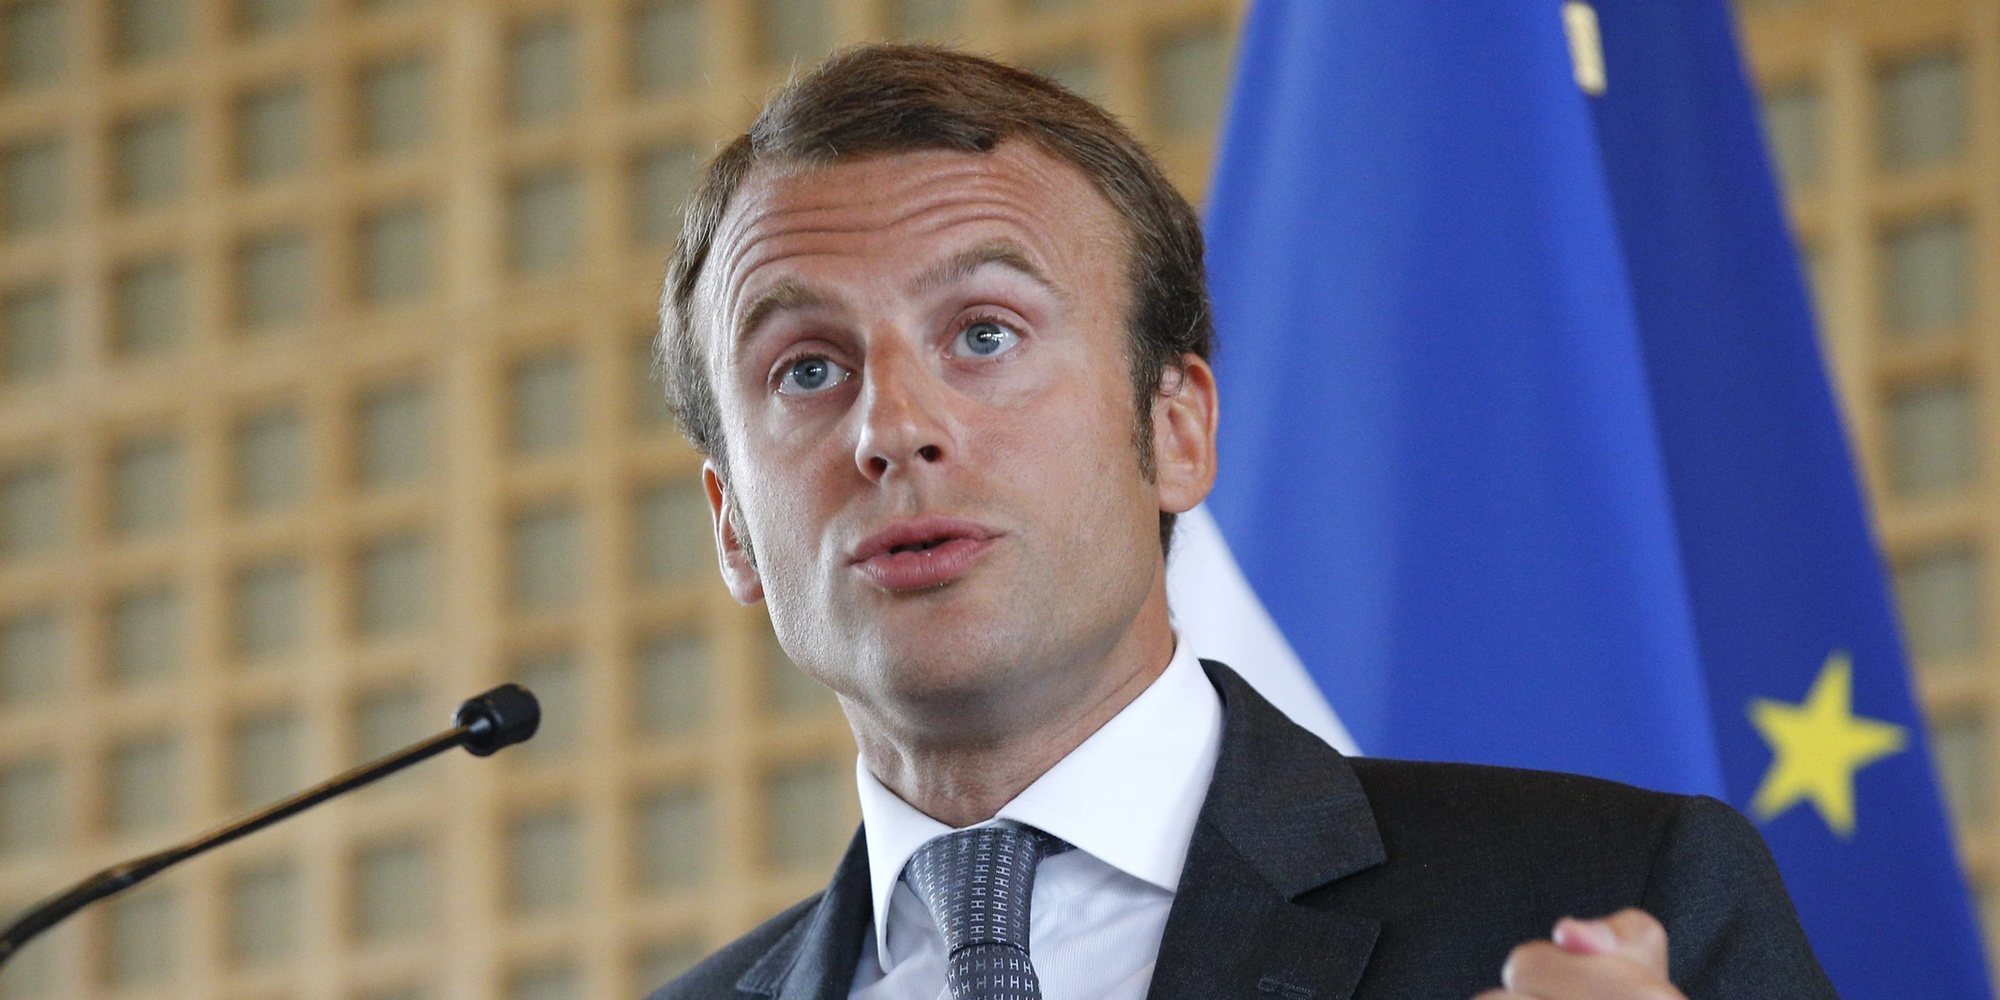 El Presidente de Francia Emmanuel Macron, positivo en coronavirus